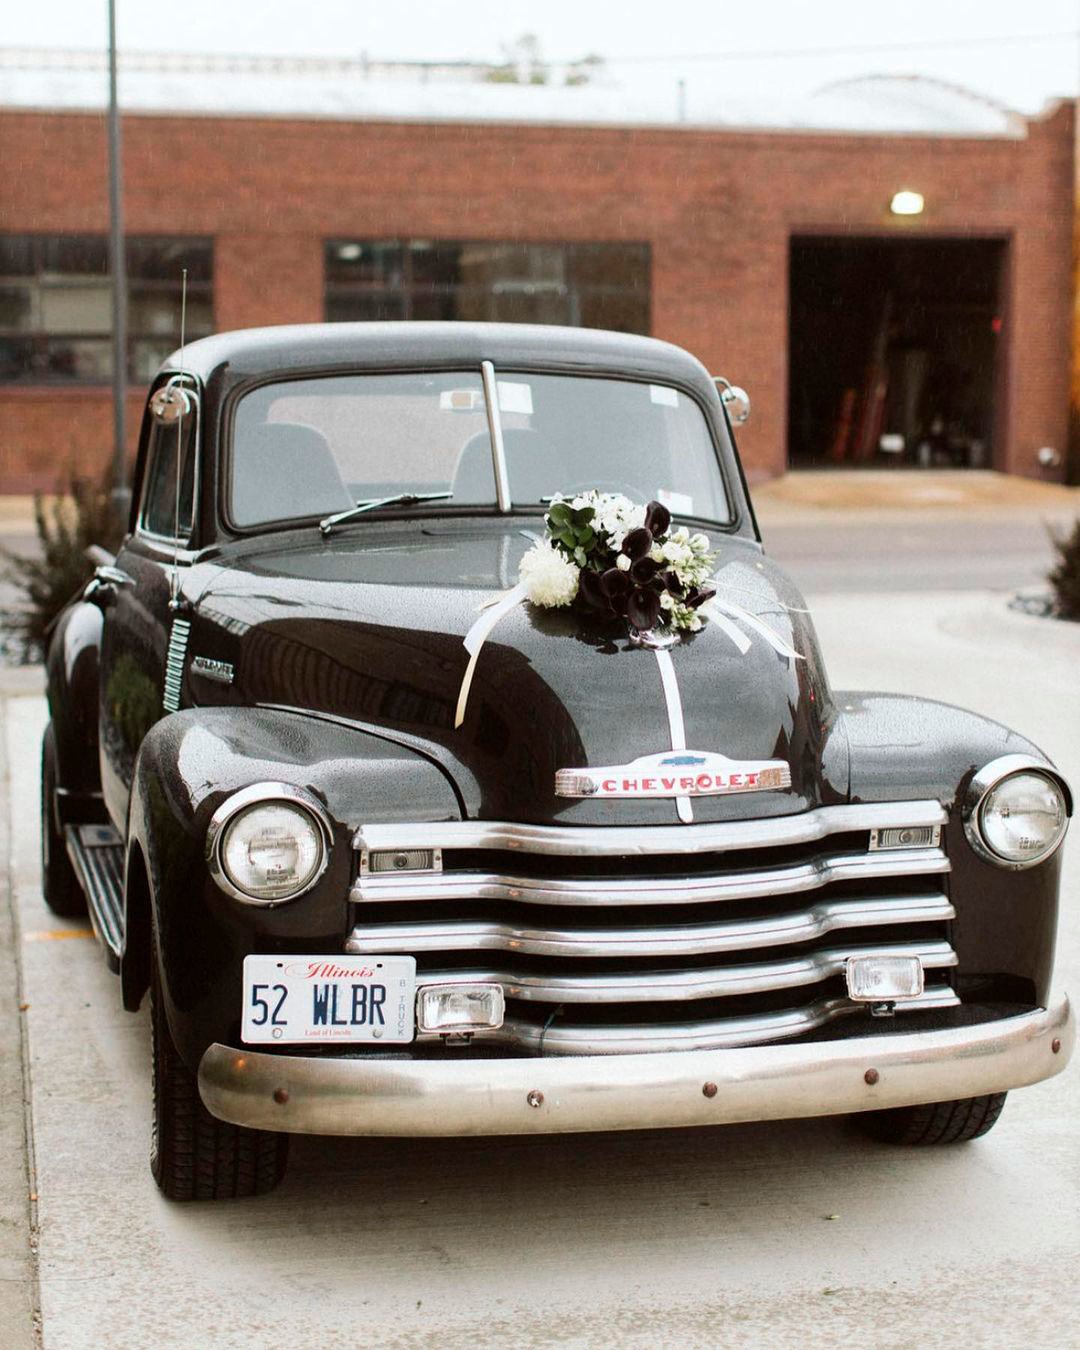 wedding car decor ideas flowers classy